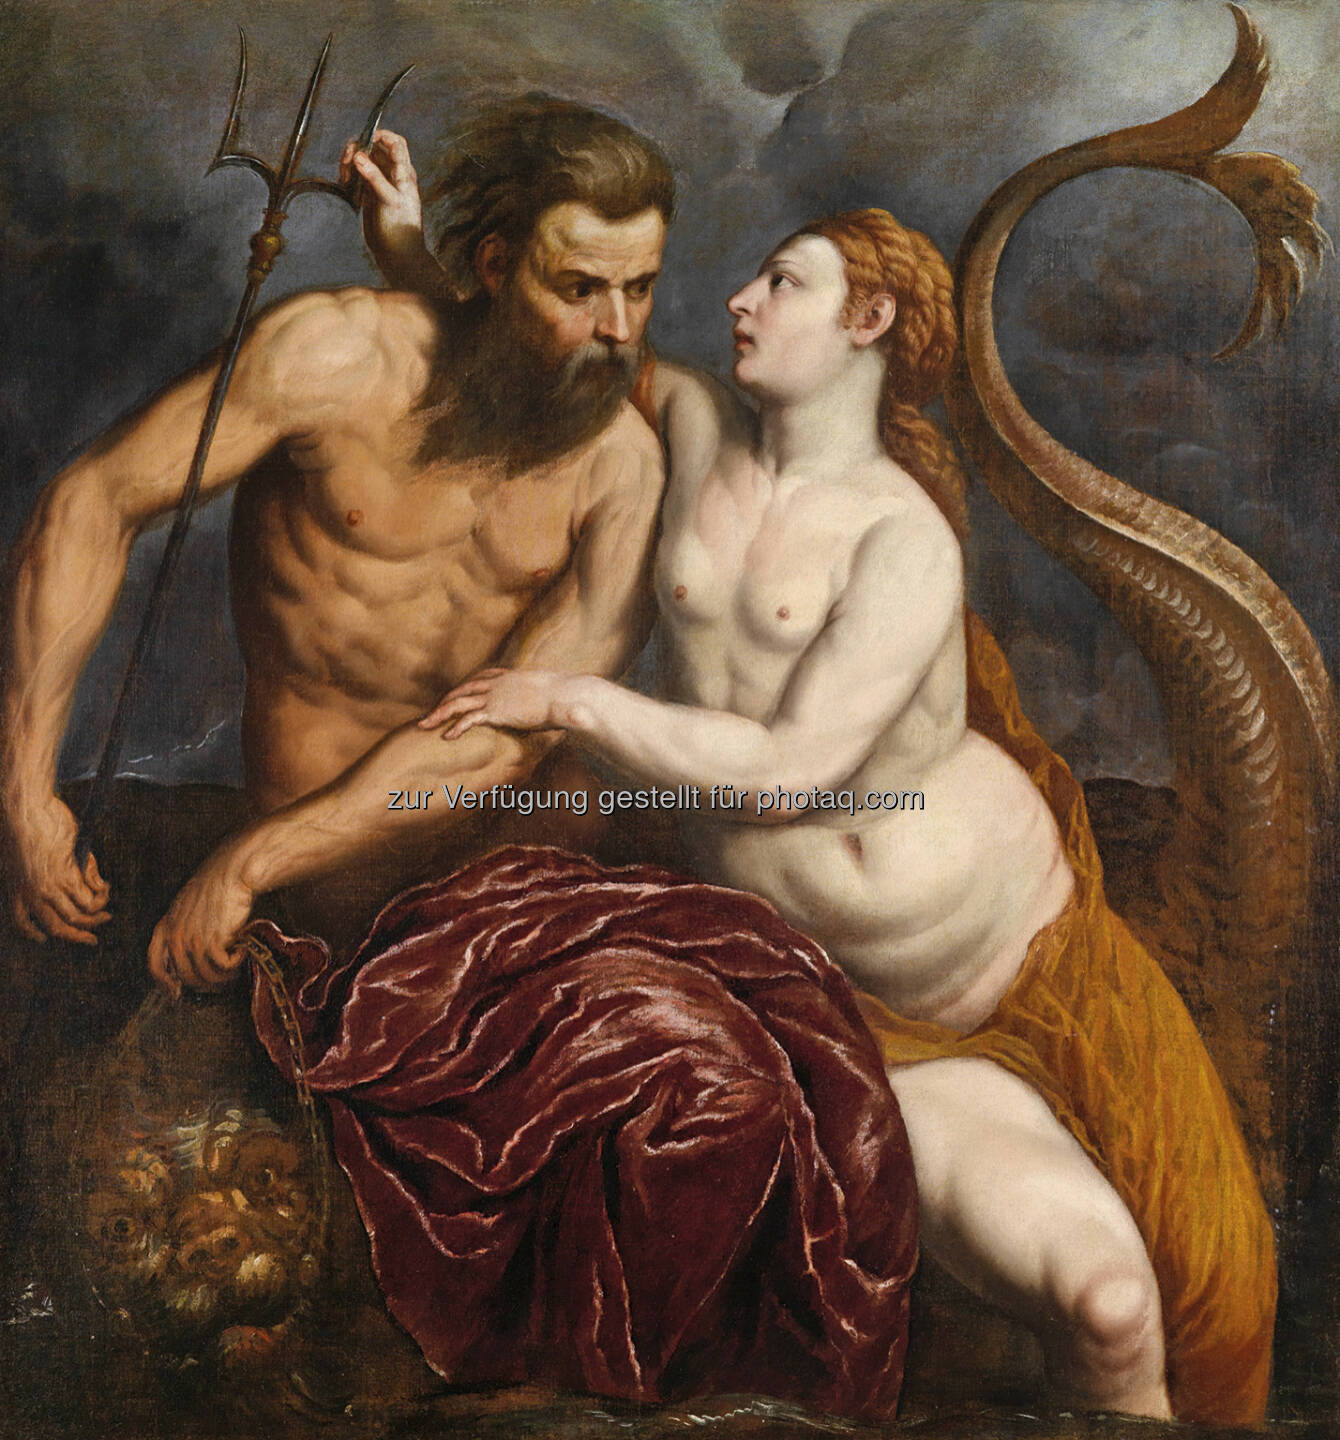 Paris Bordon (1500 - 1571) Neptun und Amphitrite, Öl/Leinwand, 106 x 98,5 cm 
Schätzwert € 100.000 - 150.000 
Auktion 15. Oktober 2013 